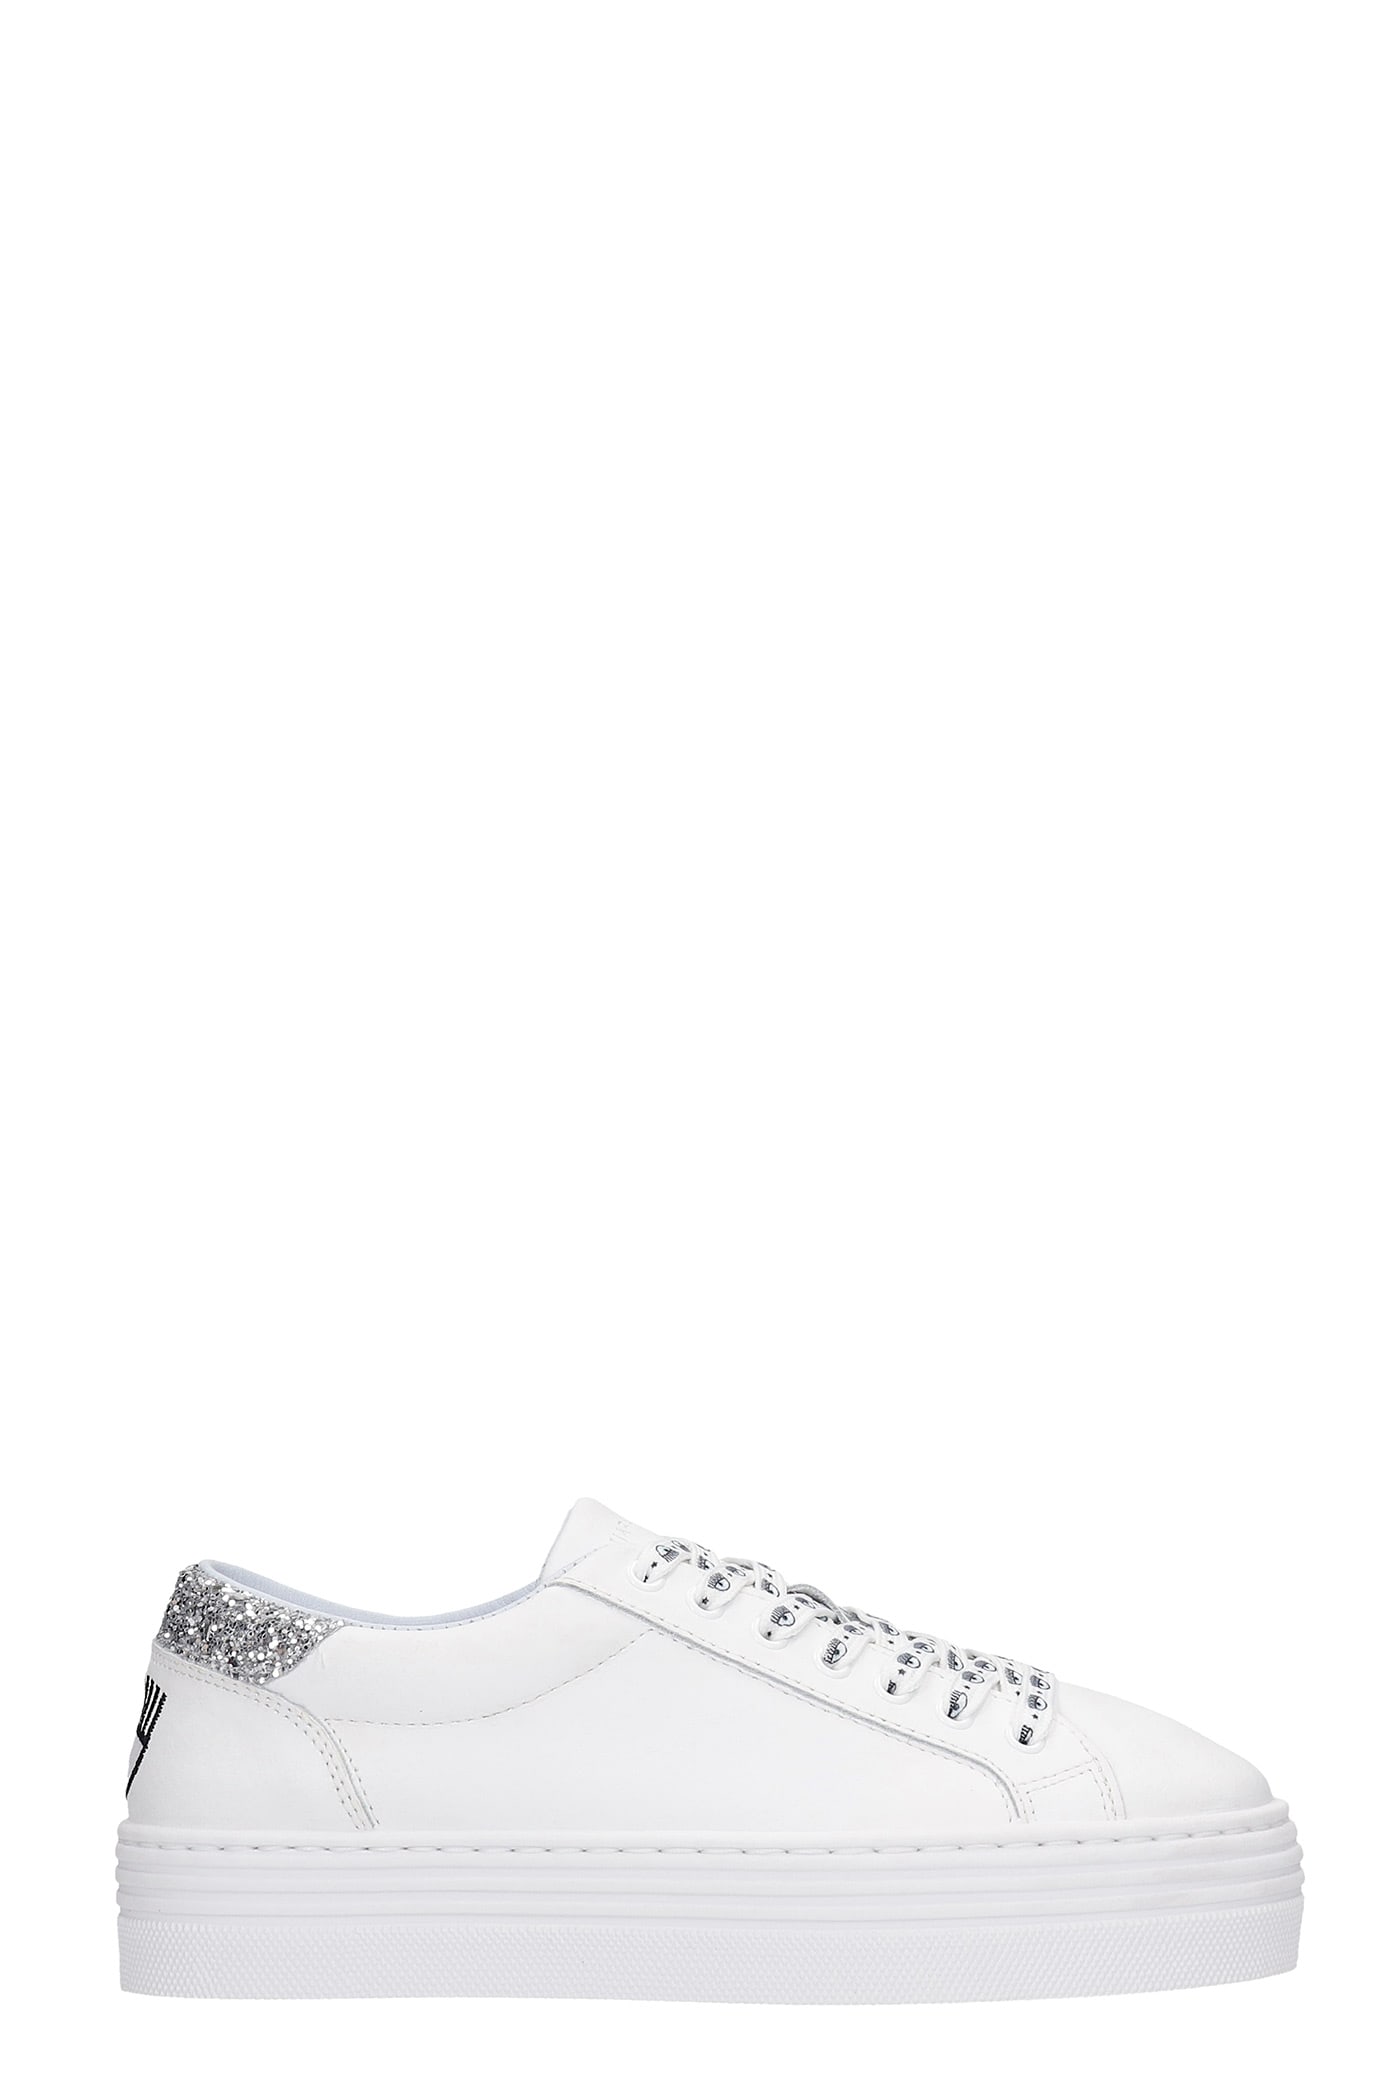 Chiara Ferragni Sneakers In White Leather